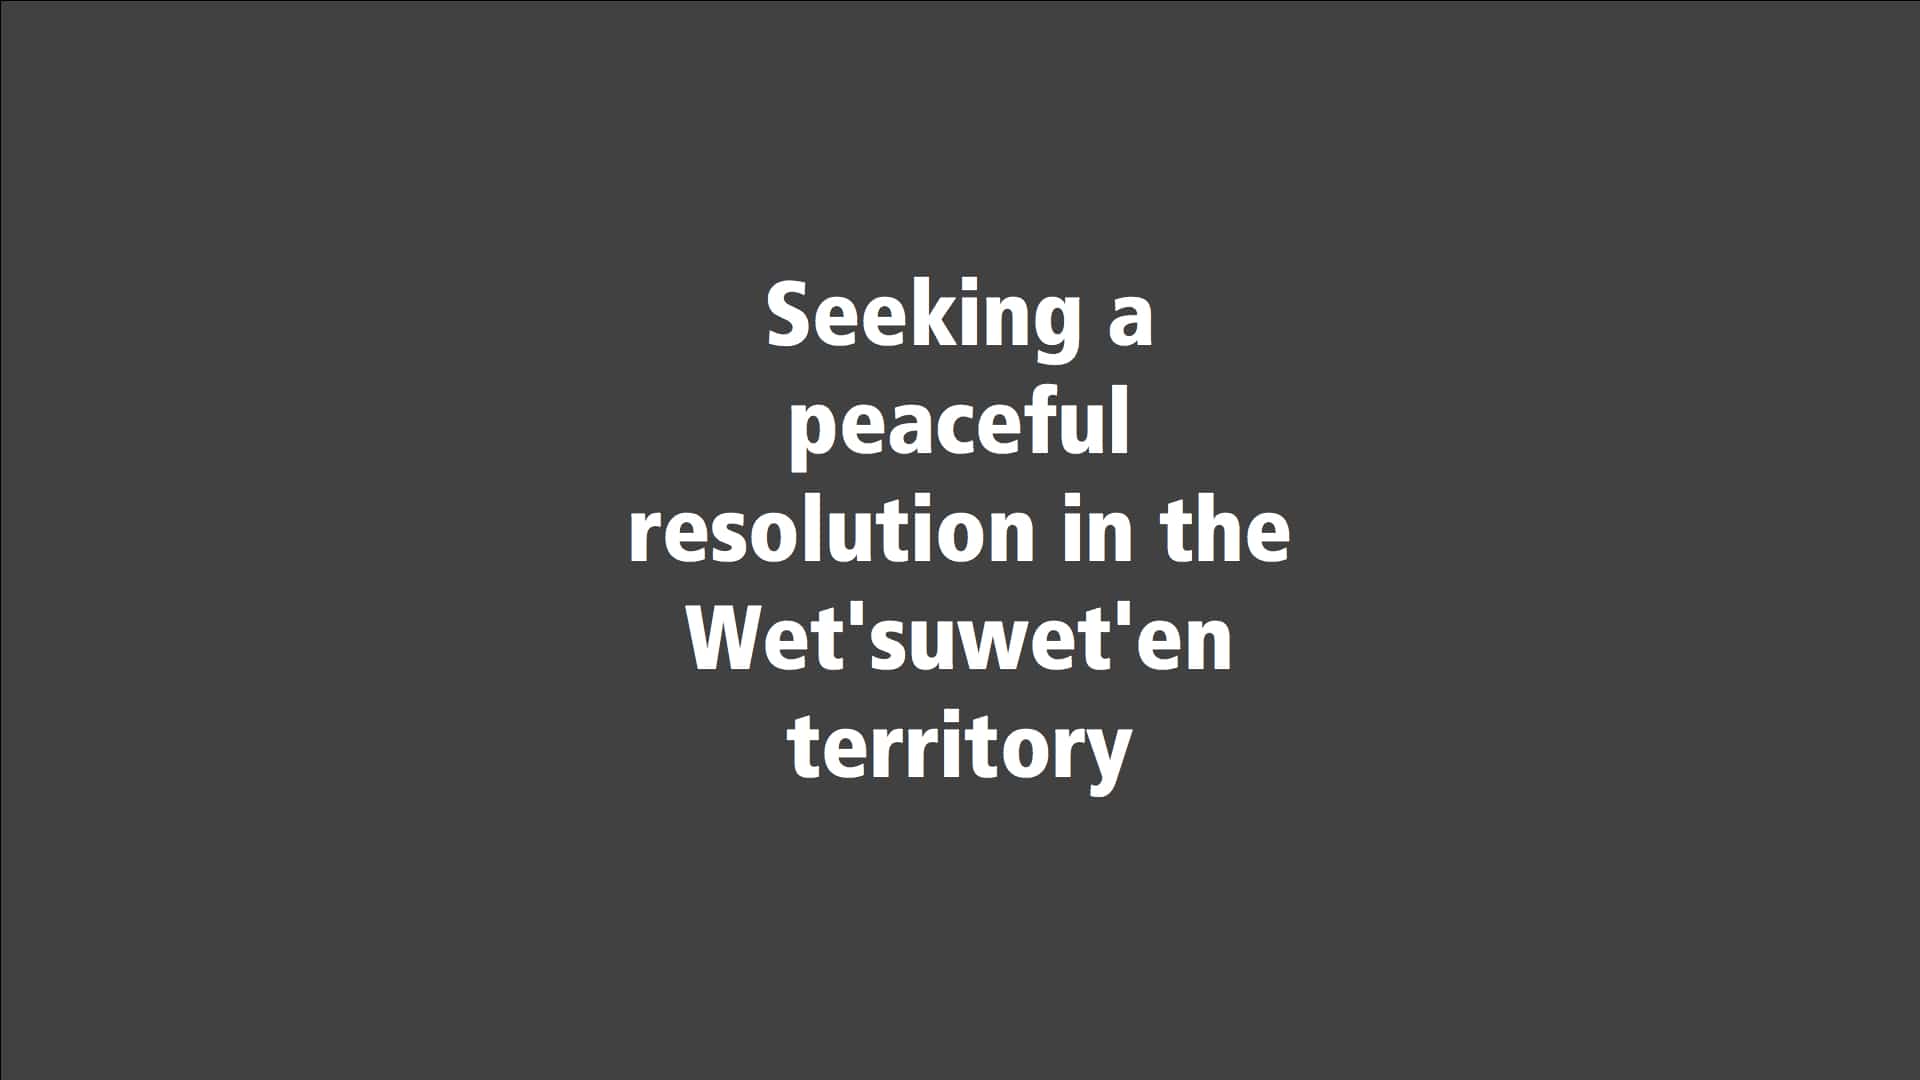 Seeking a peaceful resolution in the Wet'suwet'en territory